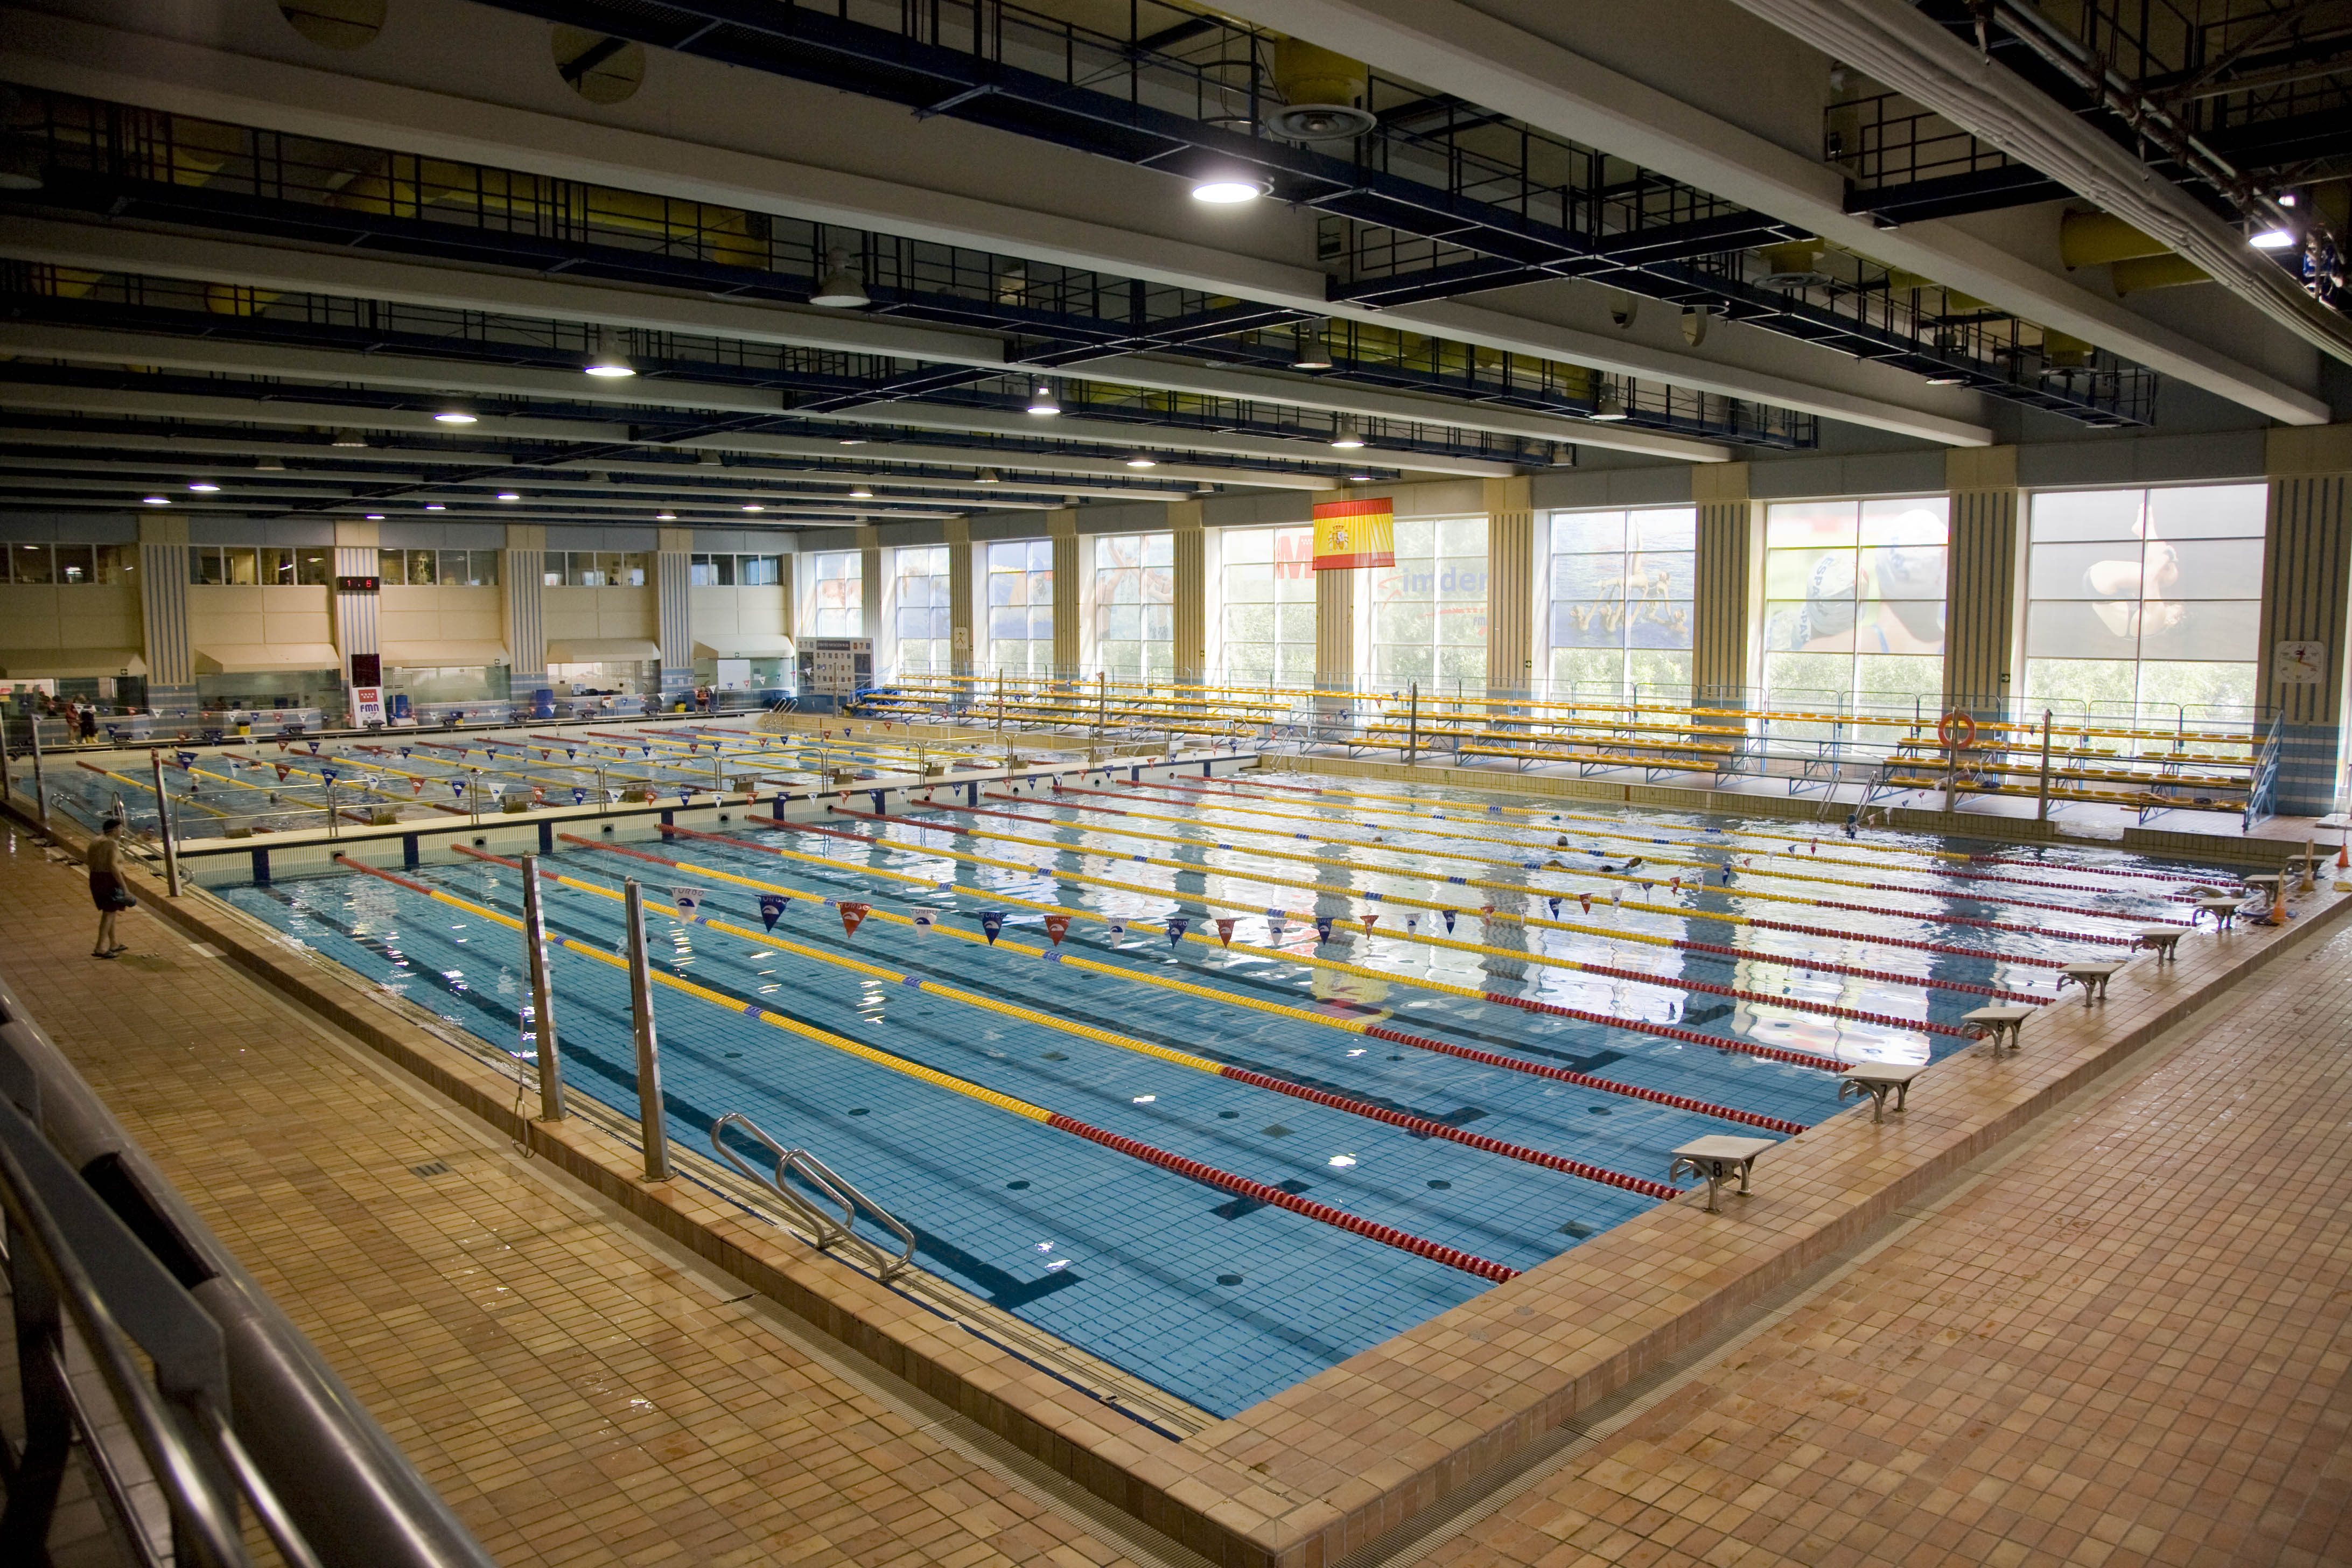 CLASES de natación en la piscina cubierta